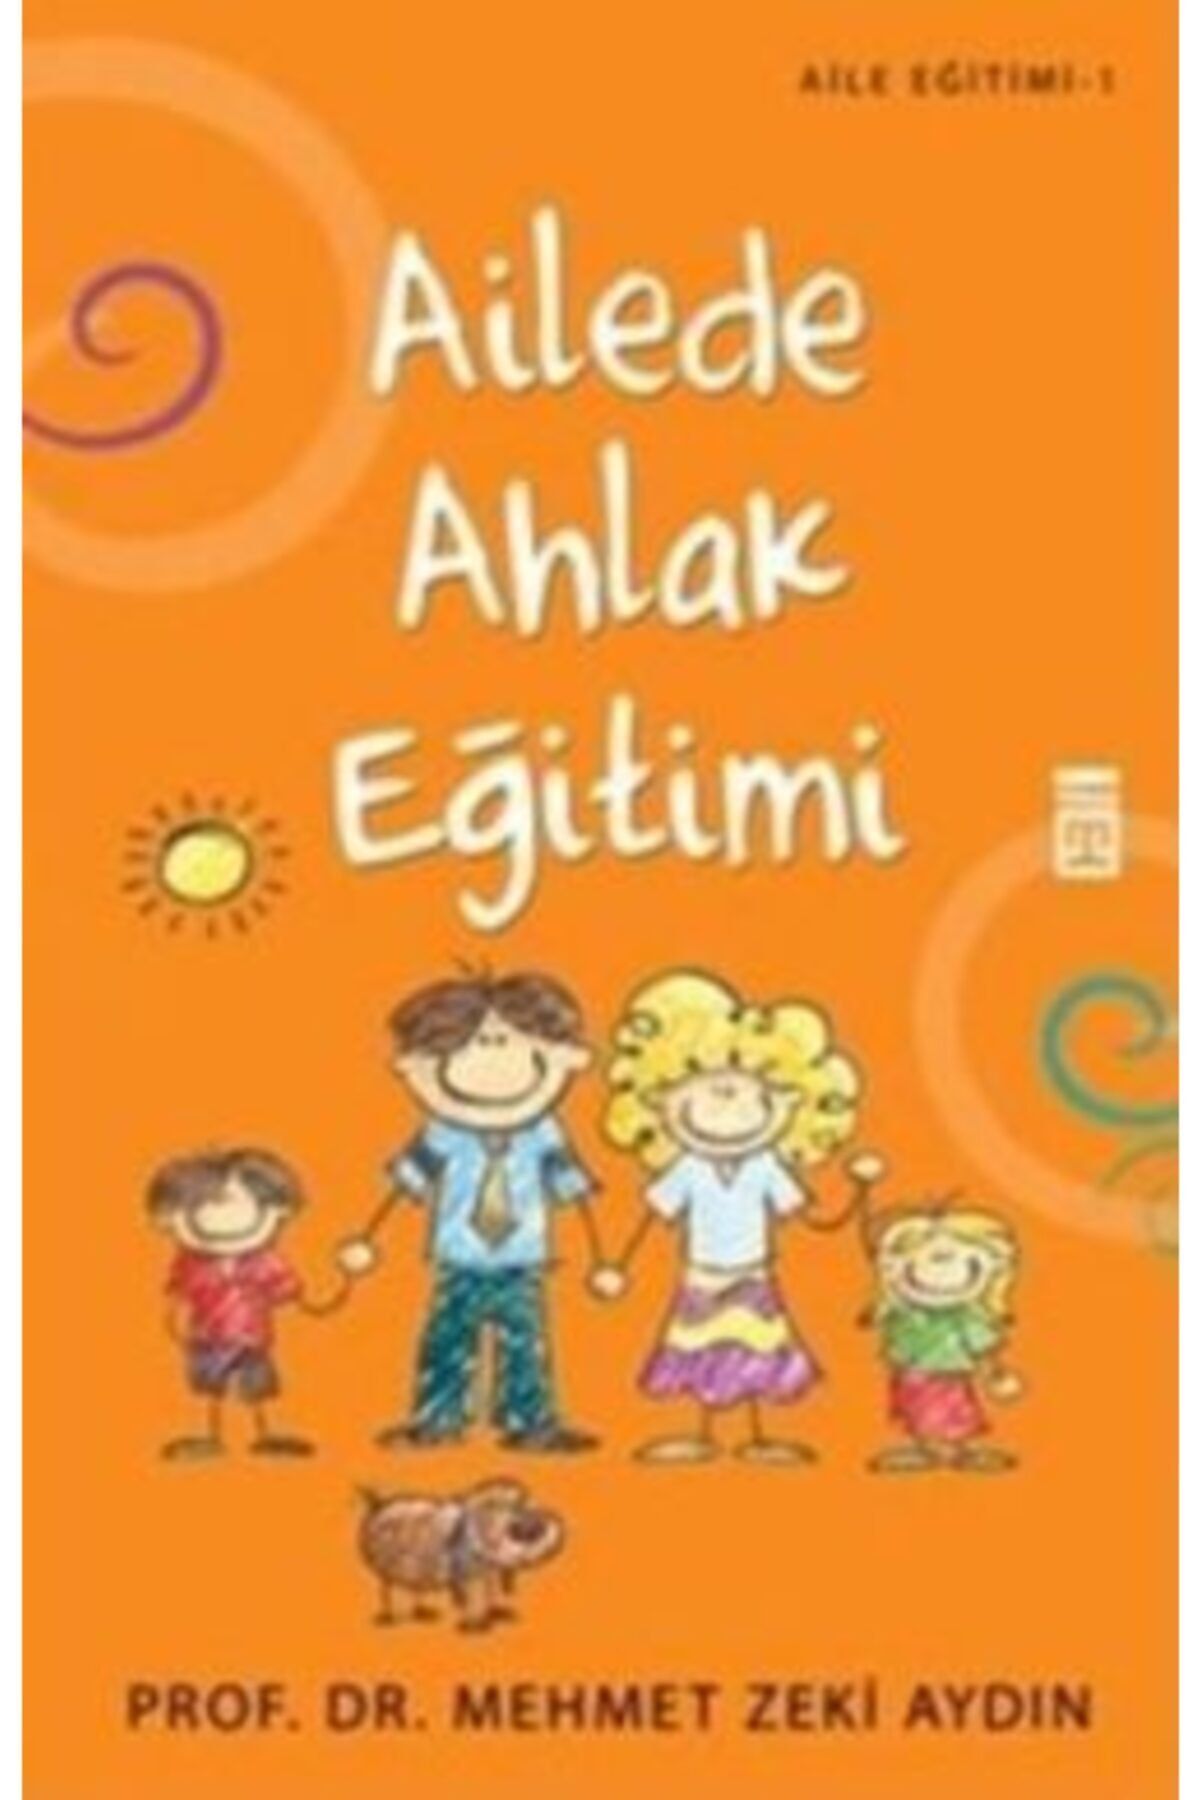 Timaş Yayınları Ailede Ahlak Eğitimi kitabı - Mehmet Zeki Aydın - Timaş Yayınları